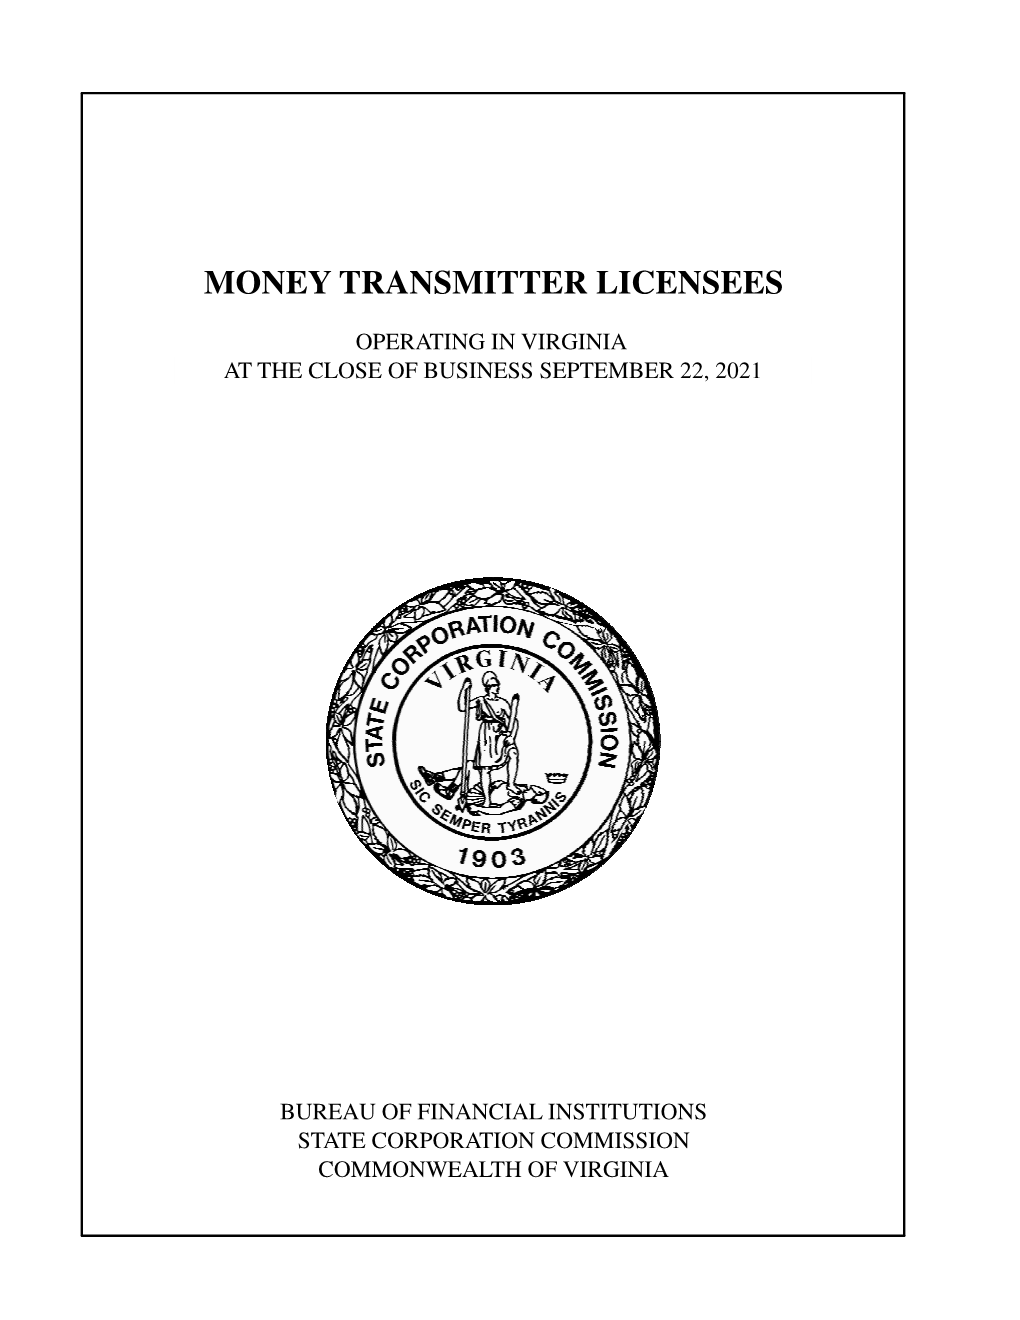 Money Transmitter Licensees